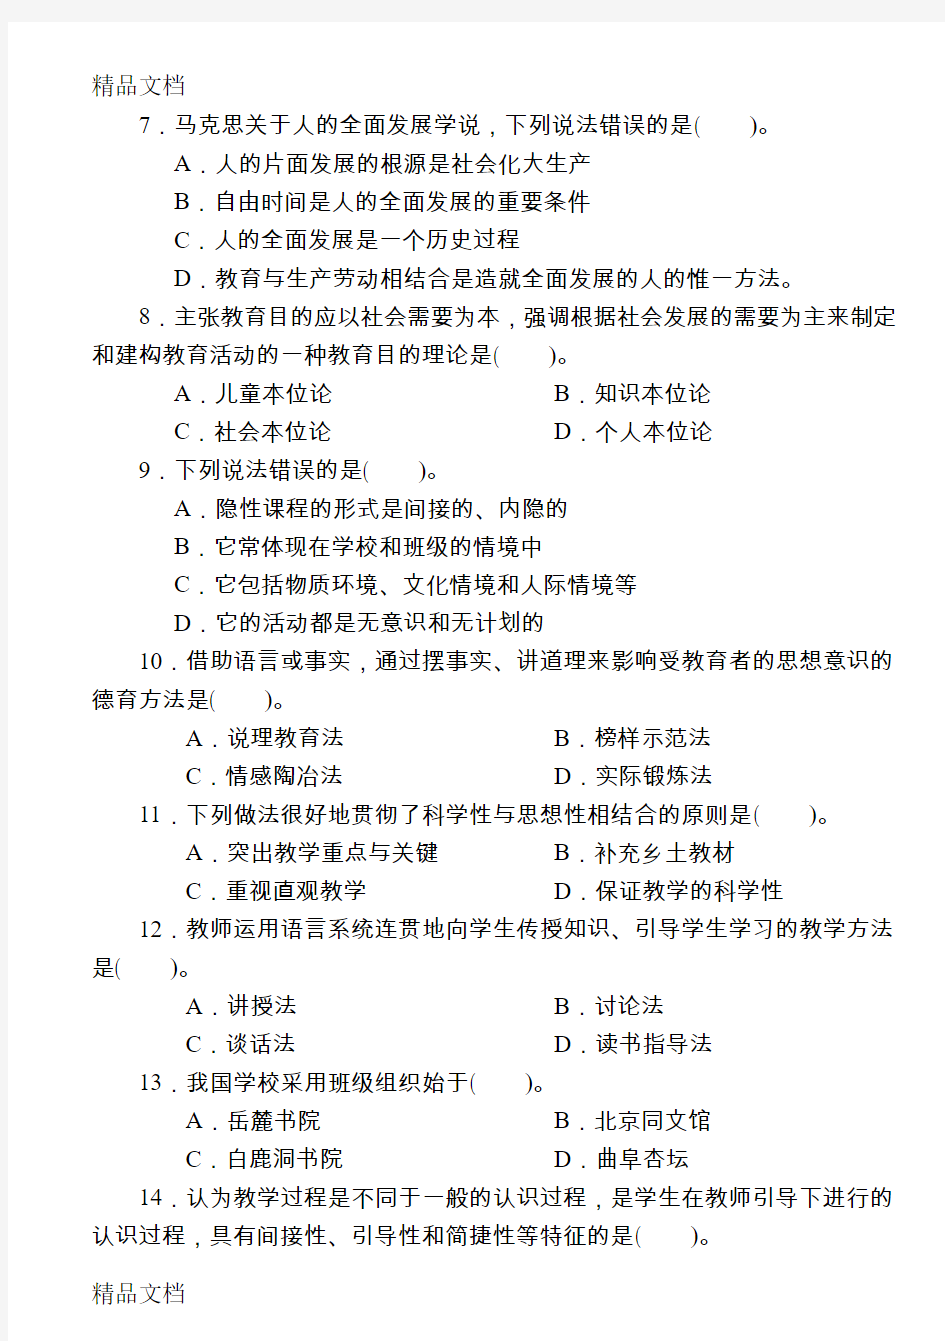 最新广东省高等教育自学考试《教育学二(00442)》真题样试卷及参考答案2套资料